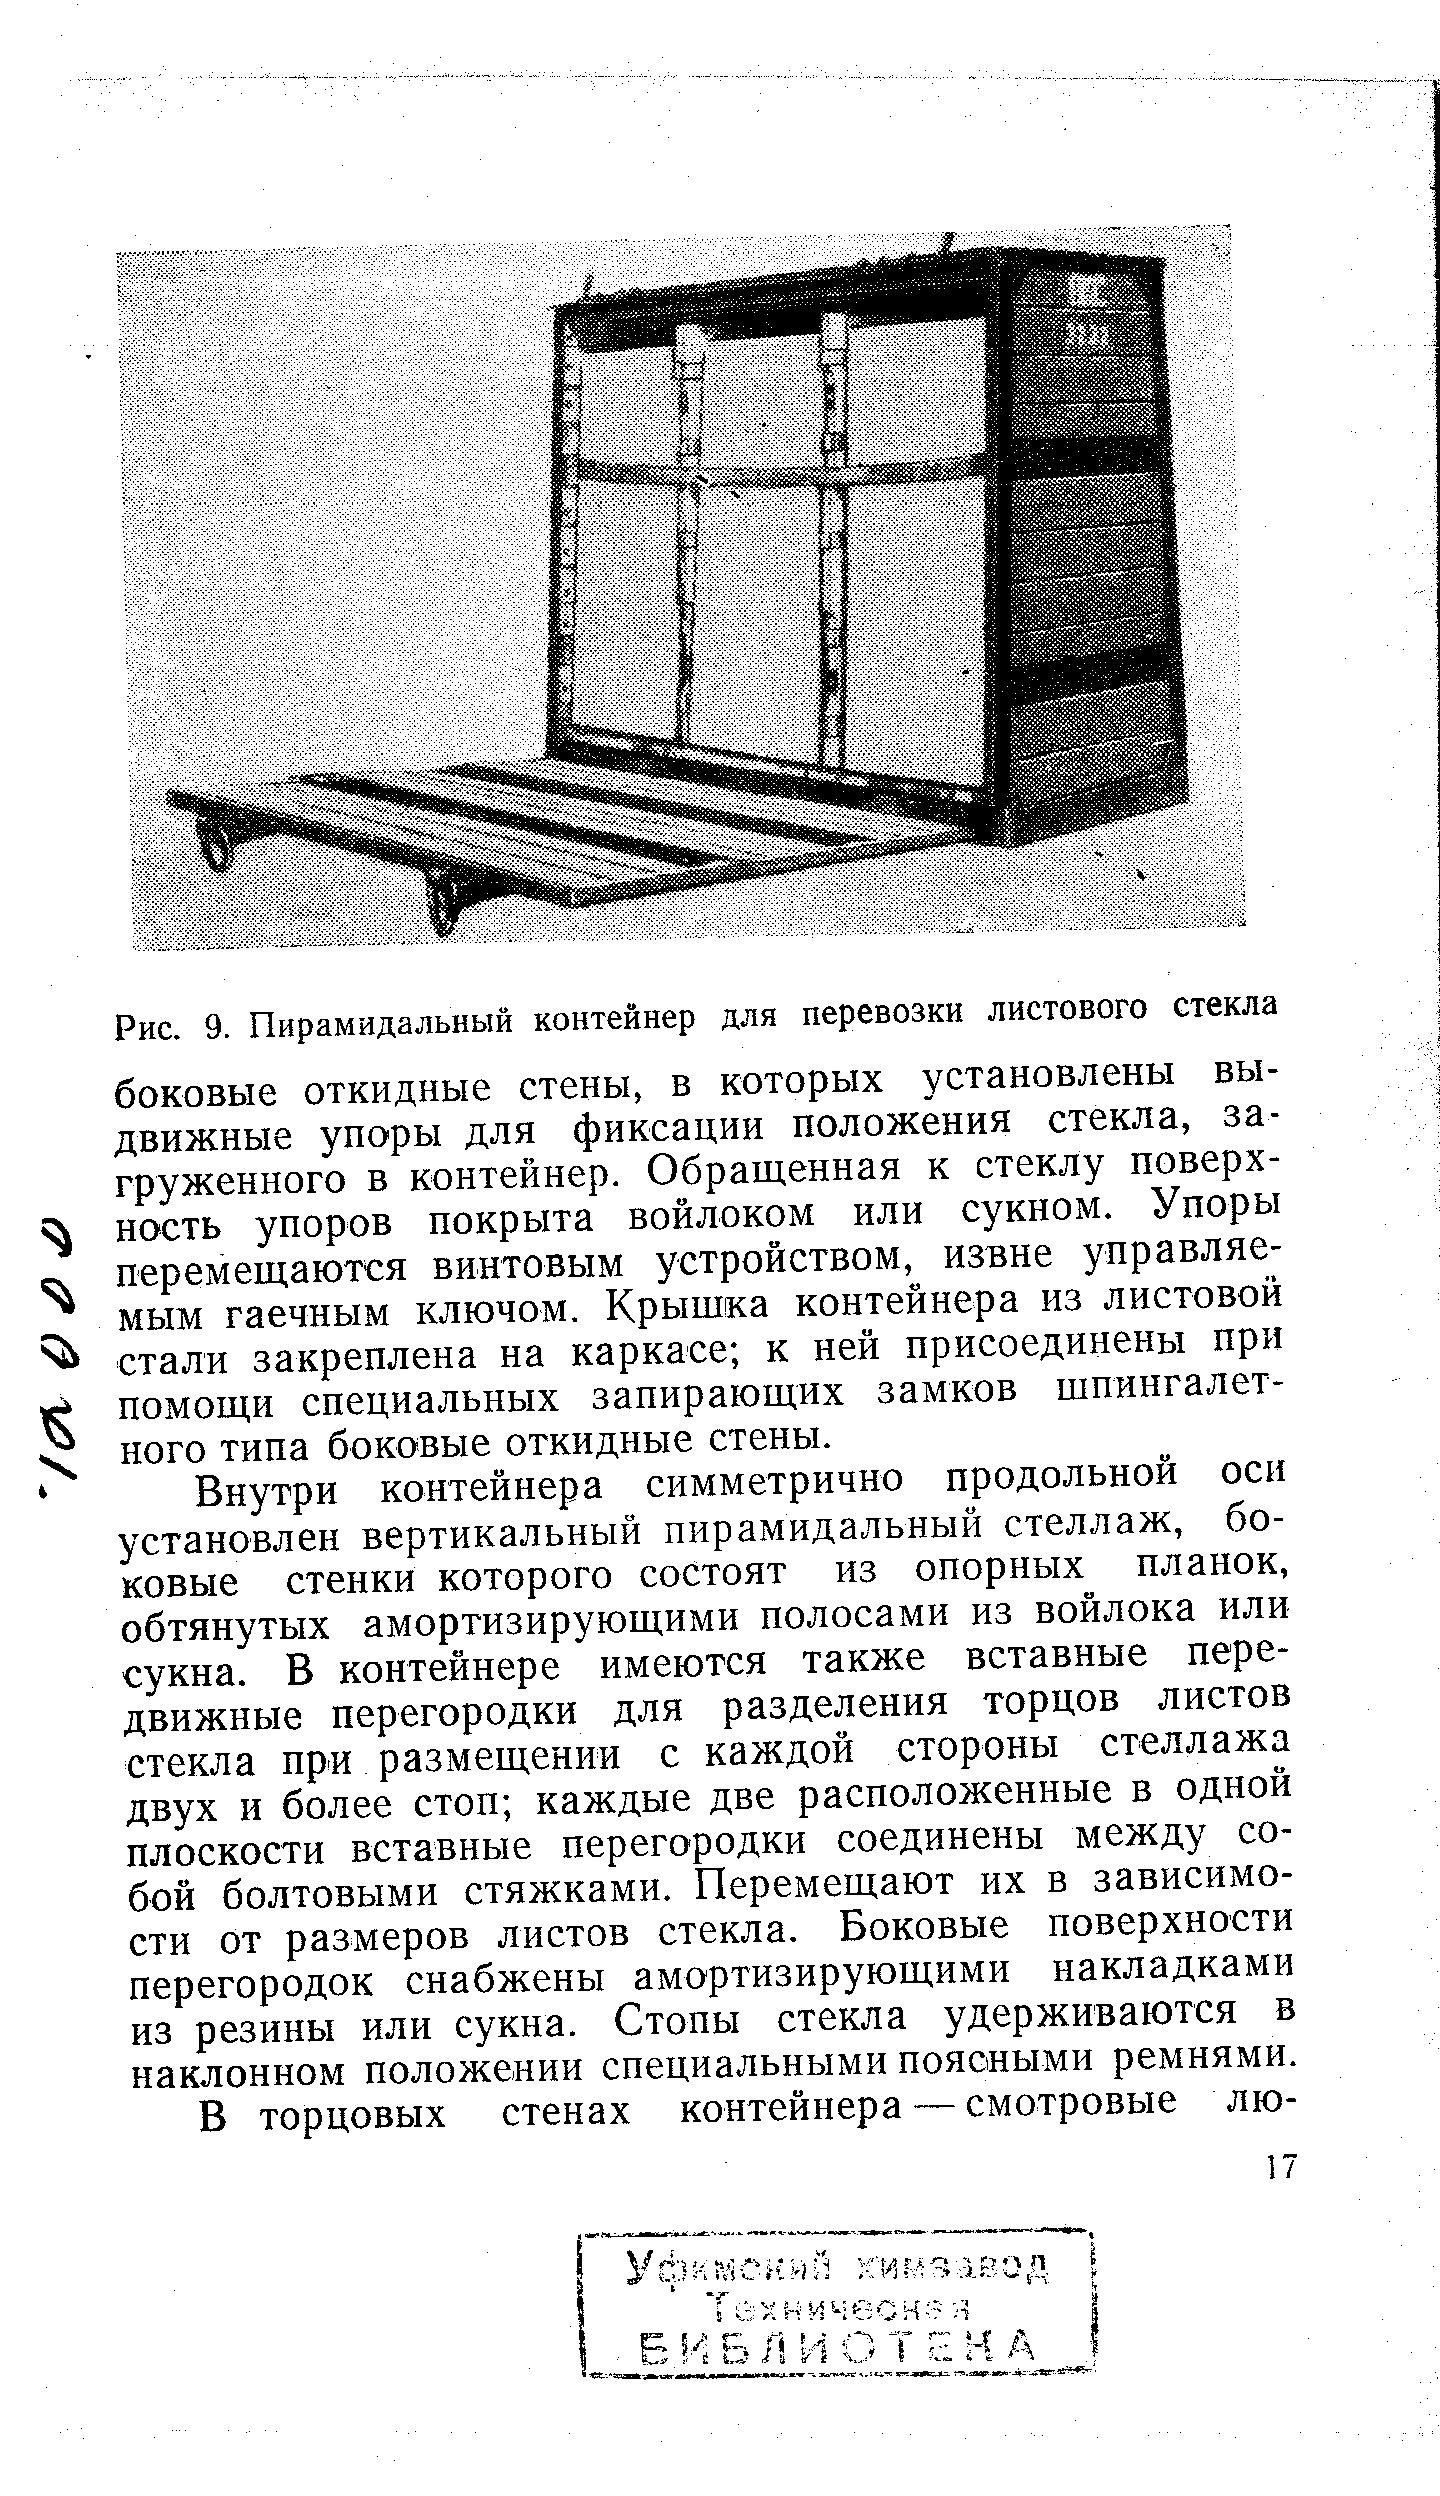 Рис. 9. Пирамидальный контейнер для перевозки листового стекла
